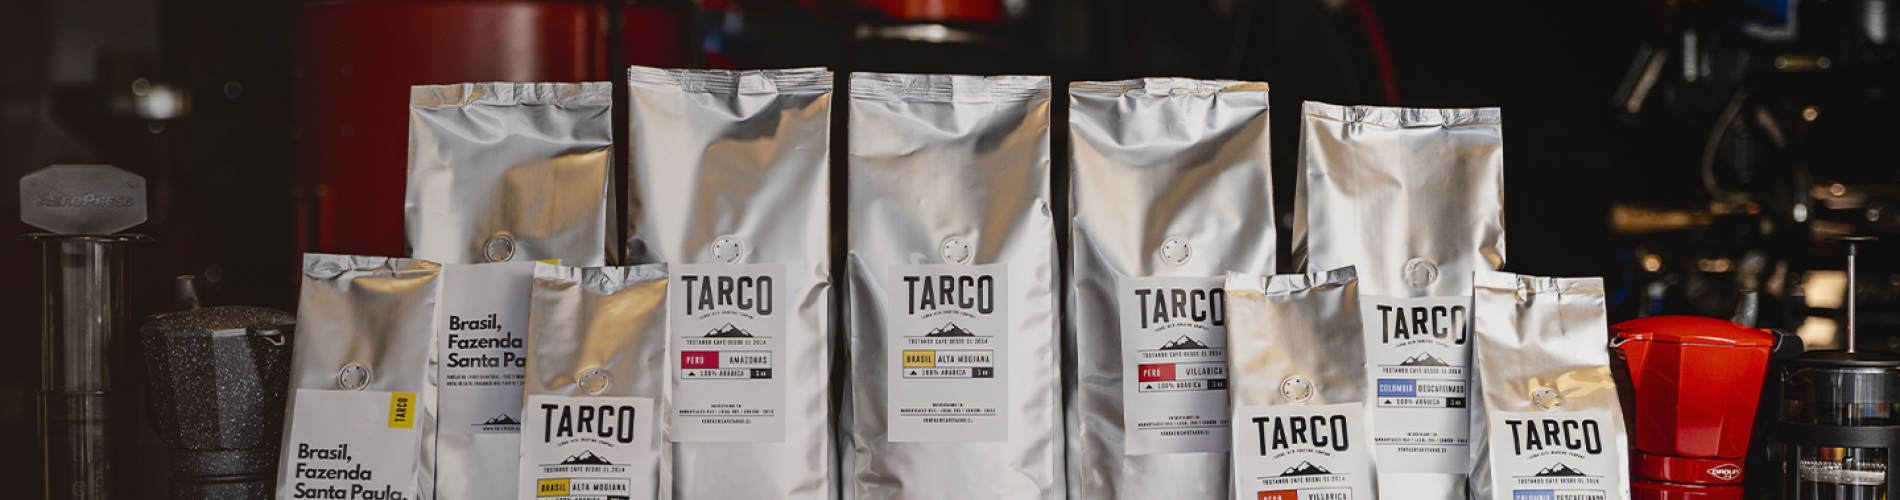 Bolsas de café Tarco y accesorios presentados en fila